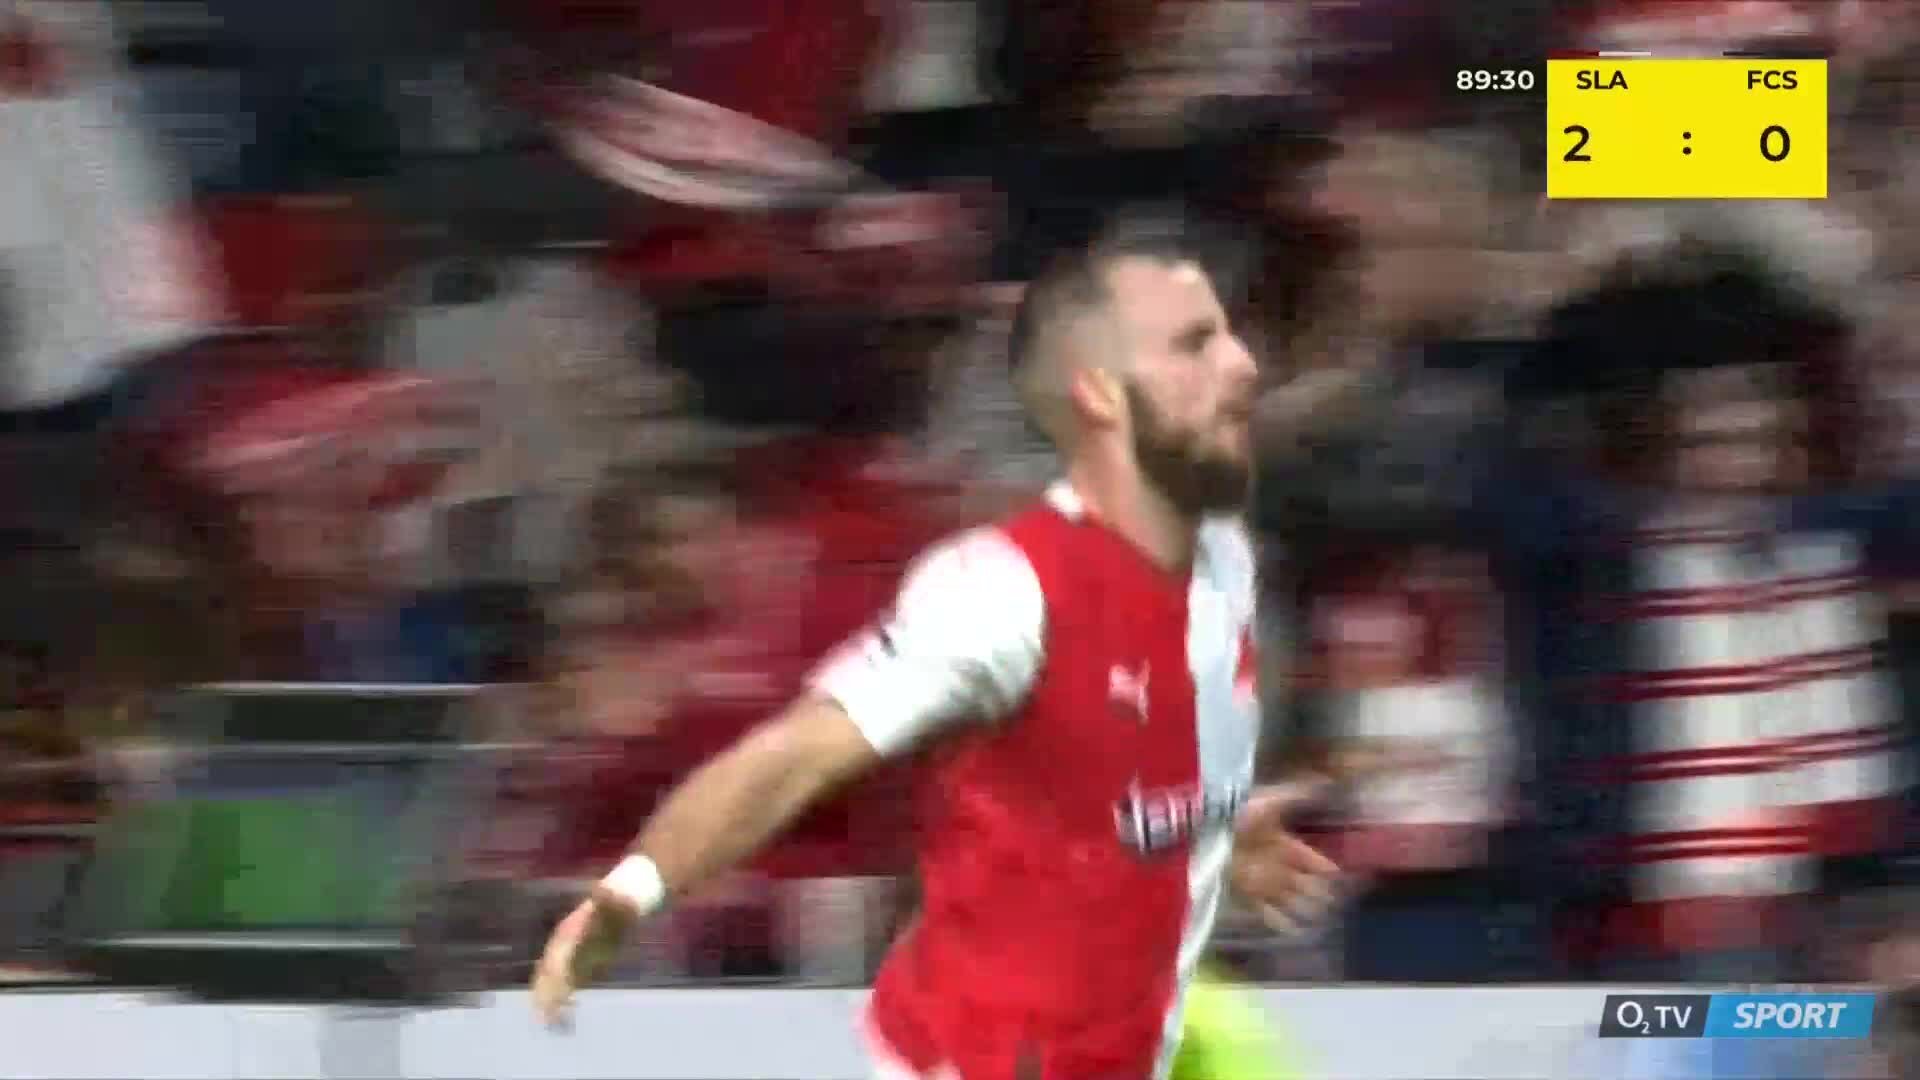 Slavia Praha vs. 1. FC Slovácko [21.10.] živě ▷ live stream